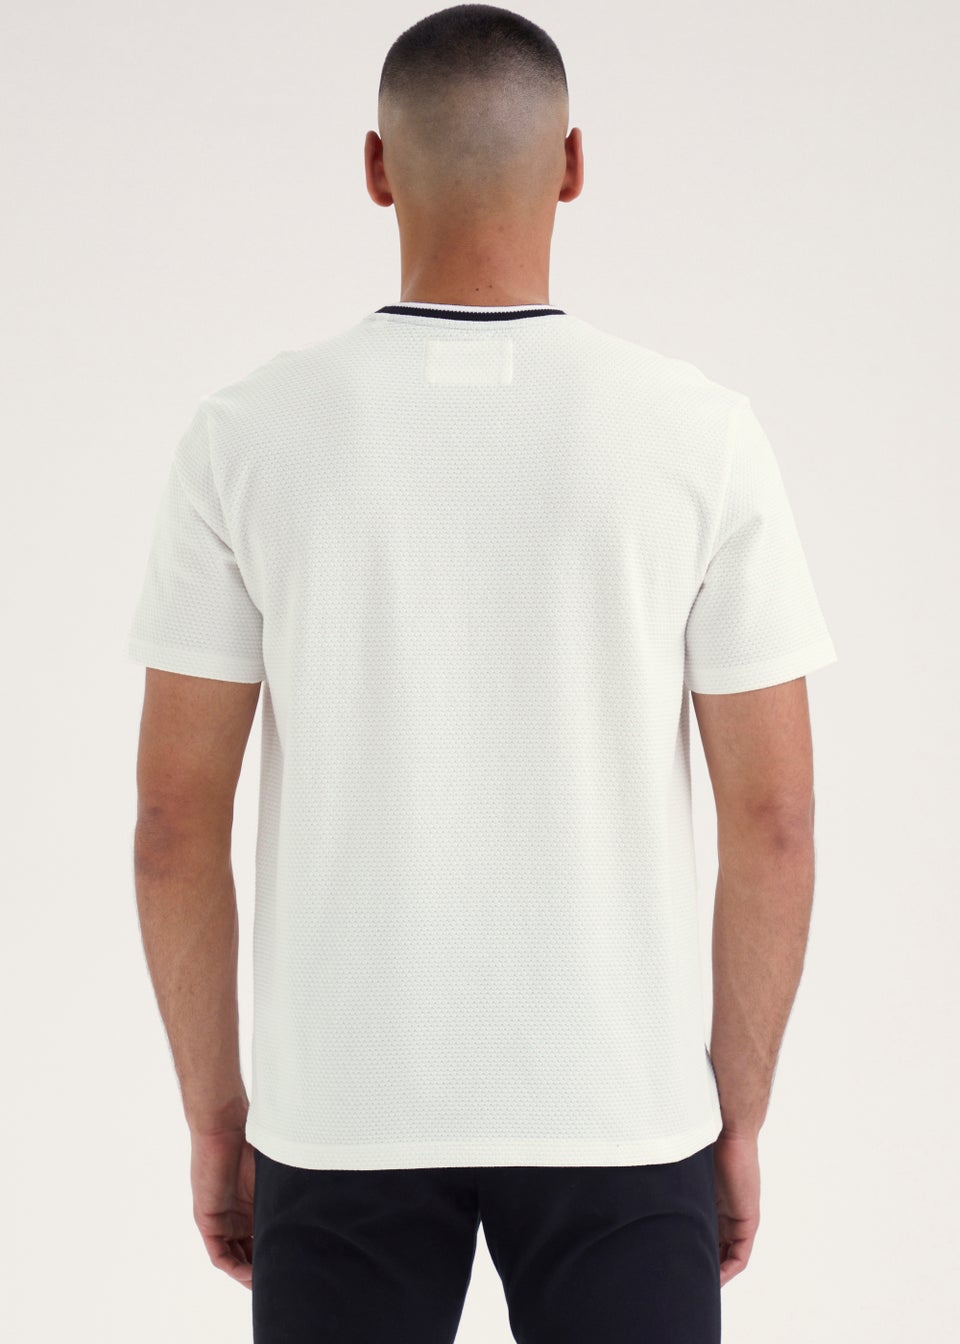 White Monochrome T-Shirt